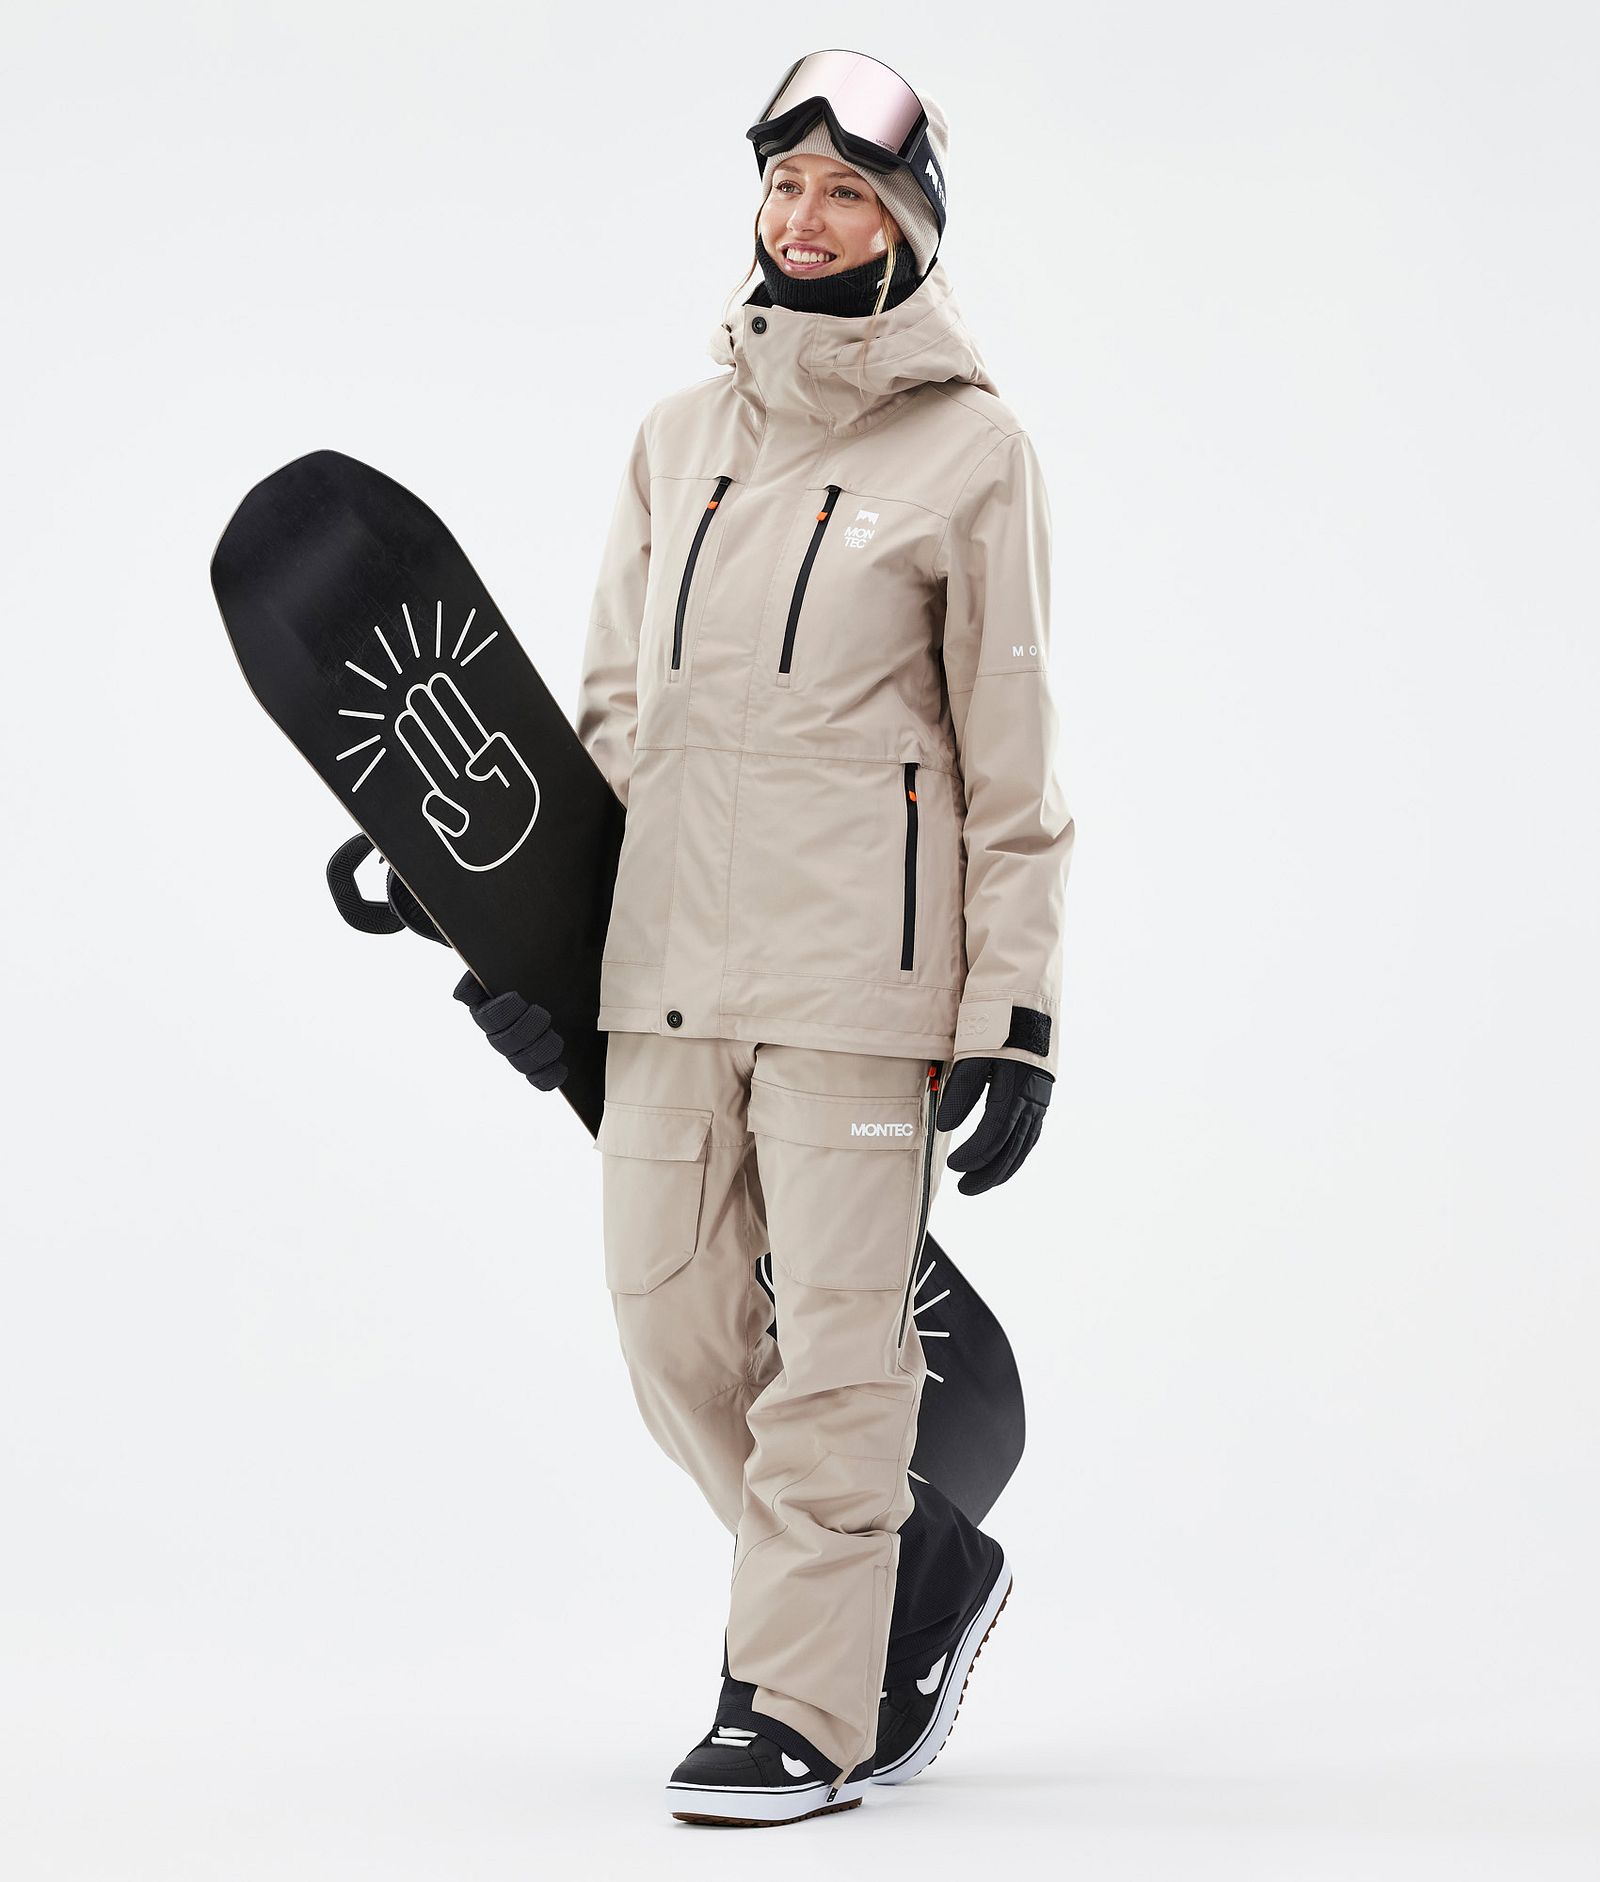 Fawk W Snowboard Jacket Women Sand, Image 3 of 10